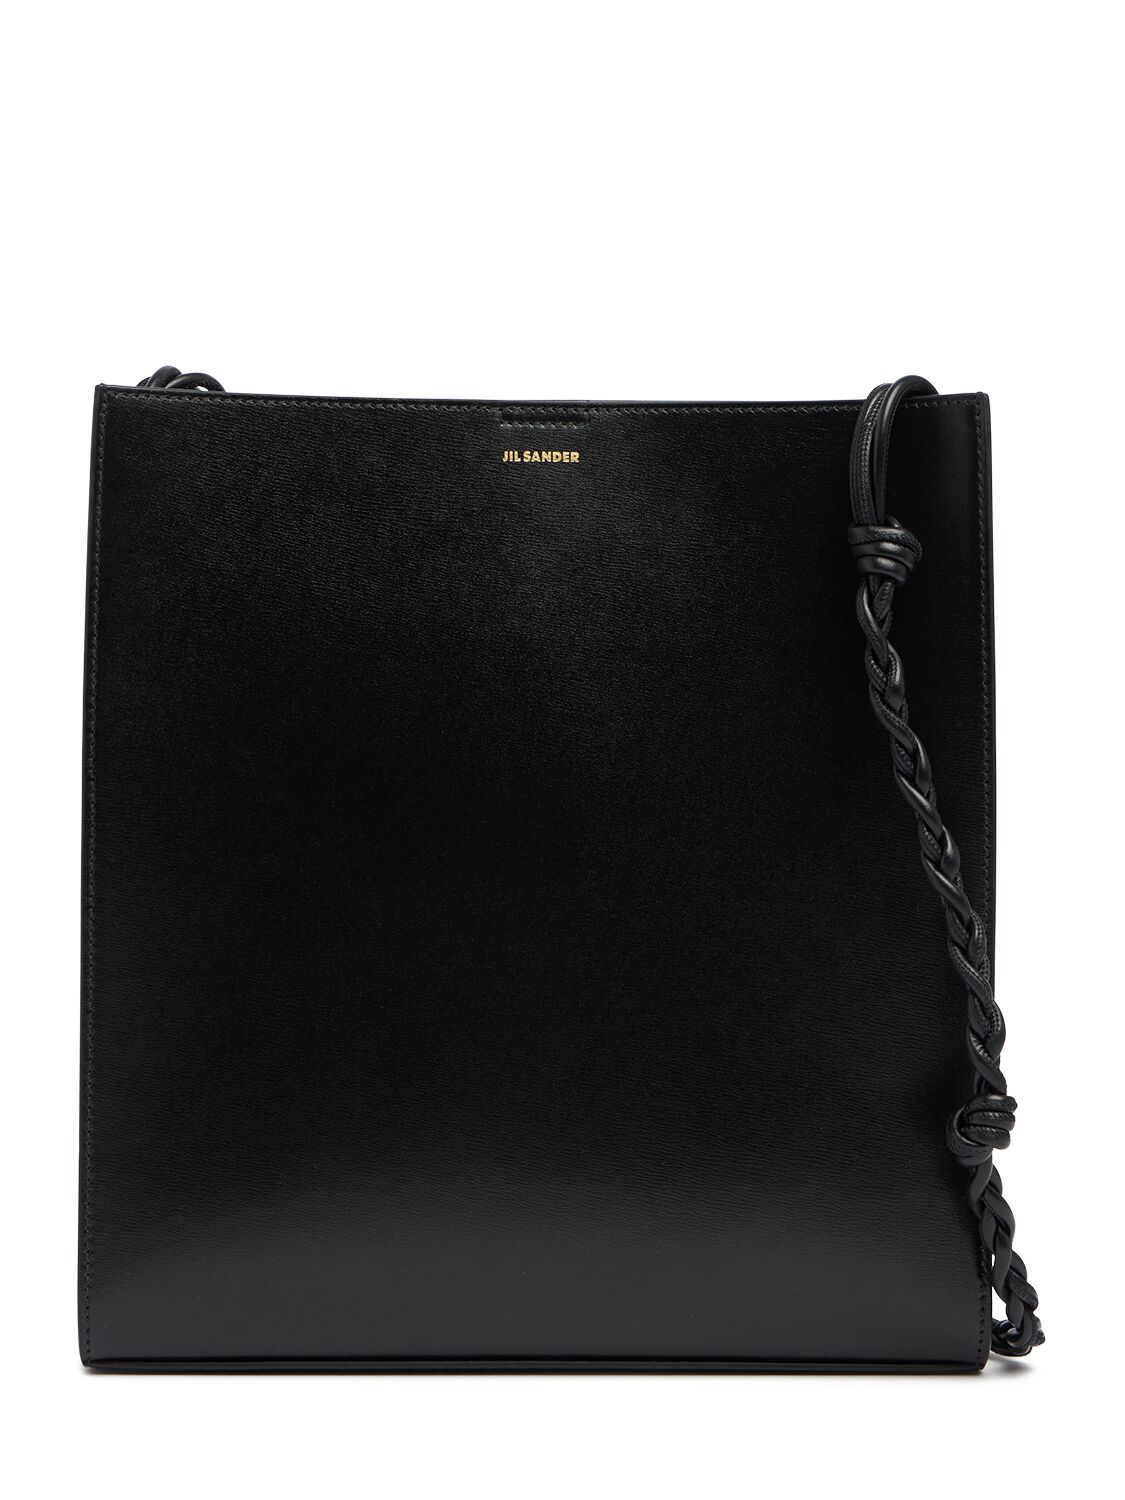 Jil Sander Medium Tangle Leather Shoulder Bag In Black